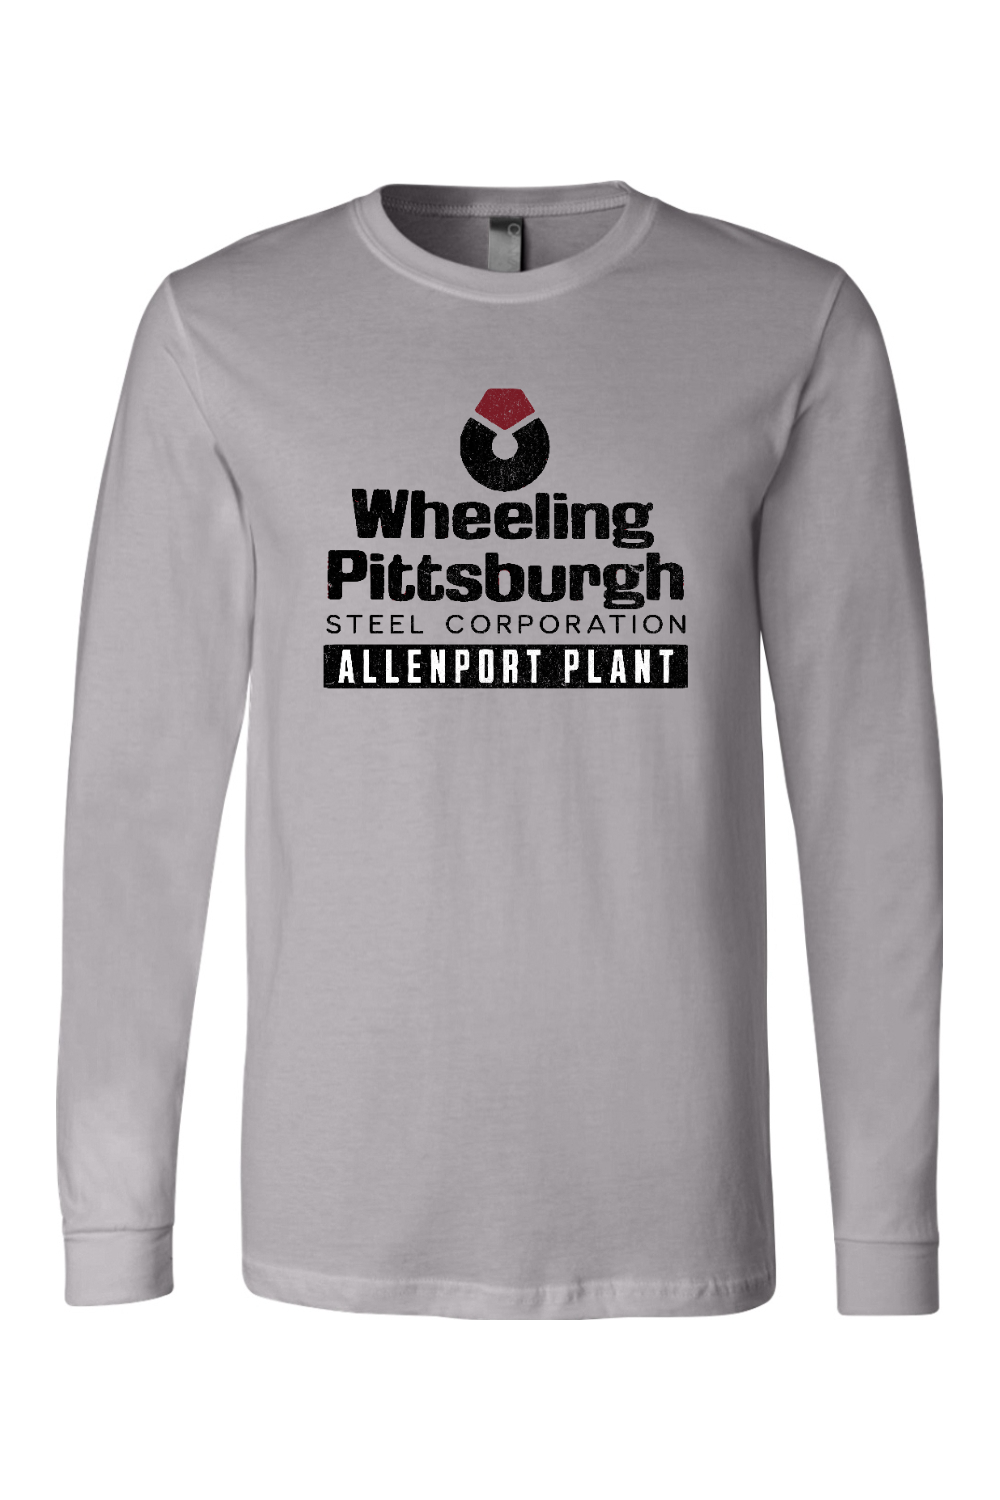 Wheeling Pittsburgh Steel - Allenport Plant - Long Sleeve Tee - Yinzylvania